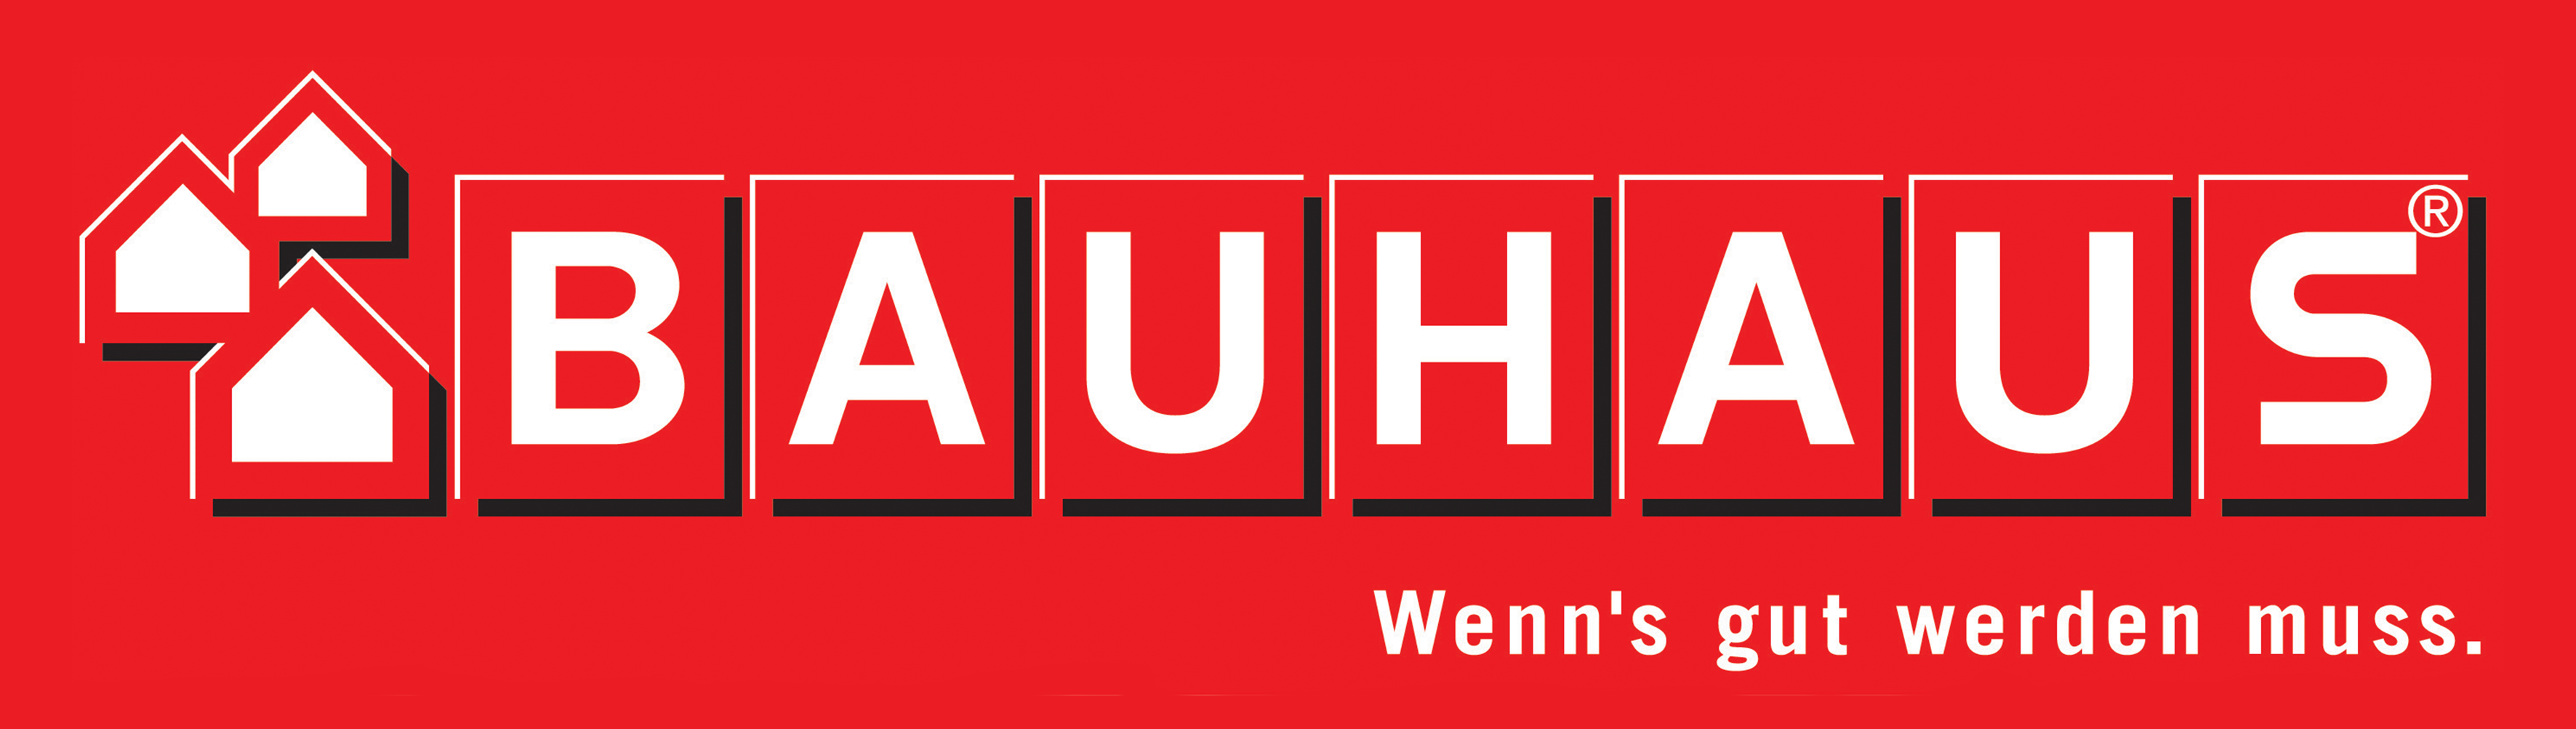 Bauhaus Banner